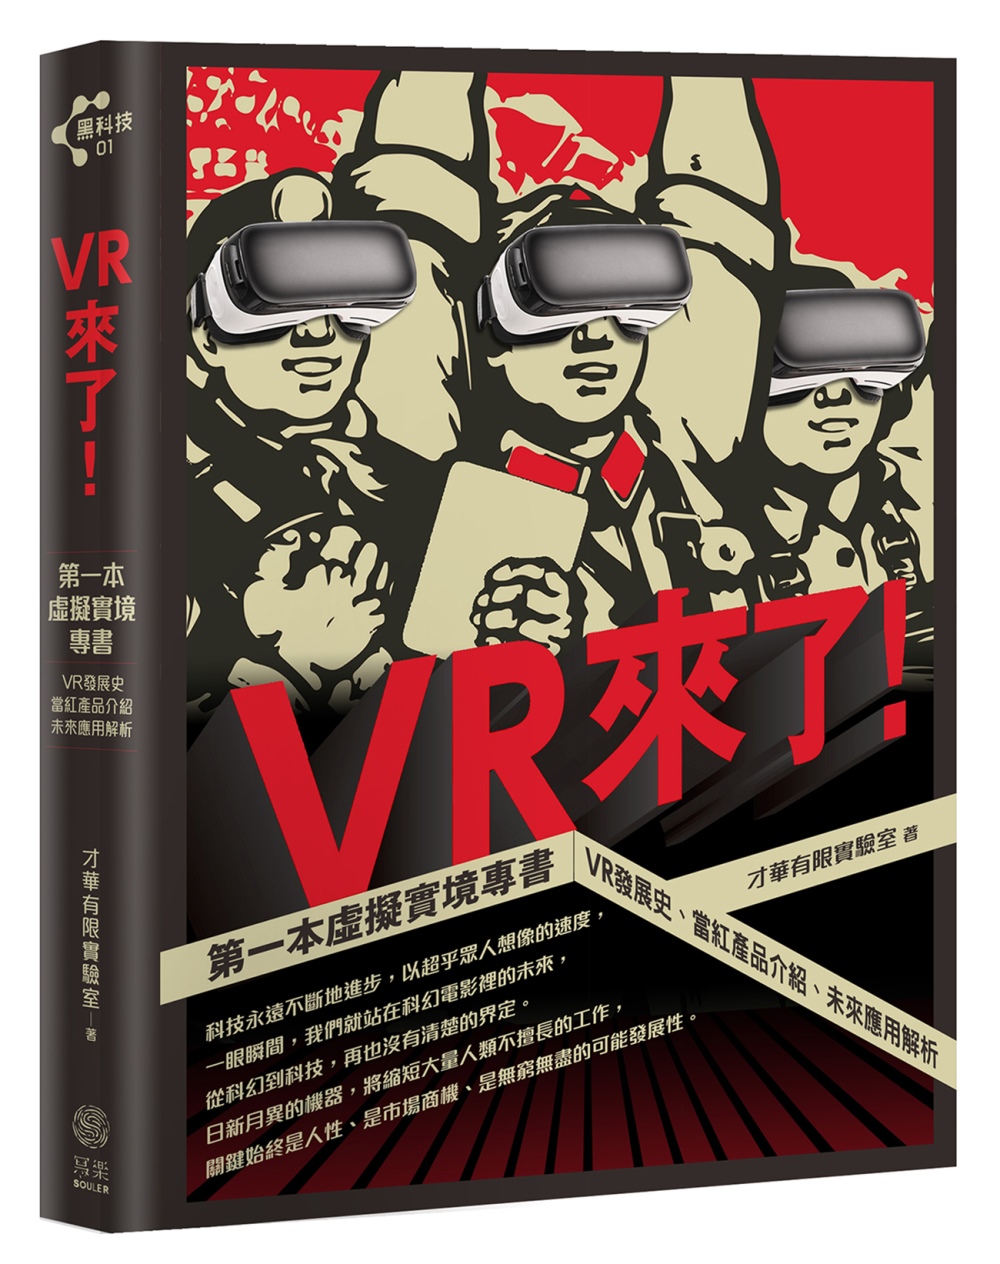 VR來了！：第一本虛擬實境專書 VR發展史、當紅產品介紹、未來應用解析【限量贈送VR精靈眼鏡】+【博客來獨家收納袋】